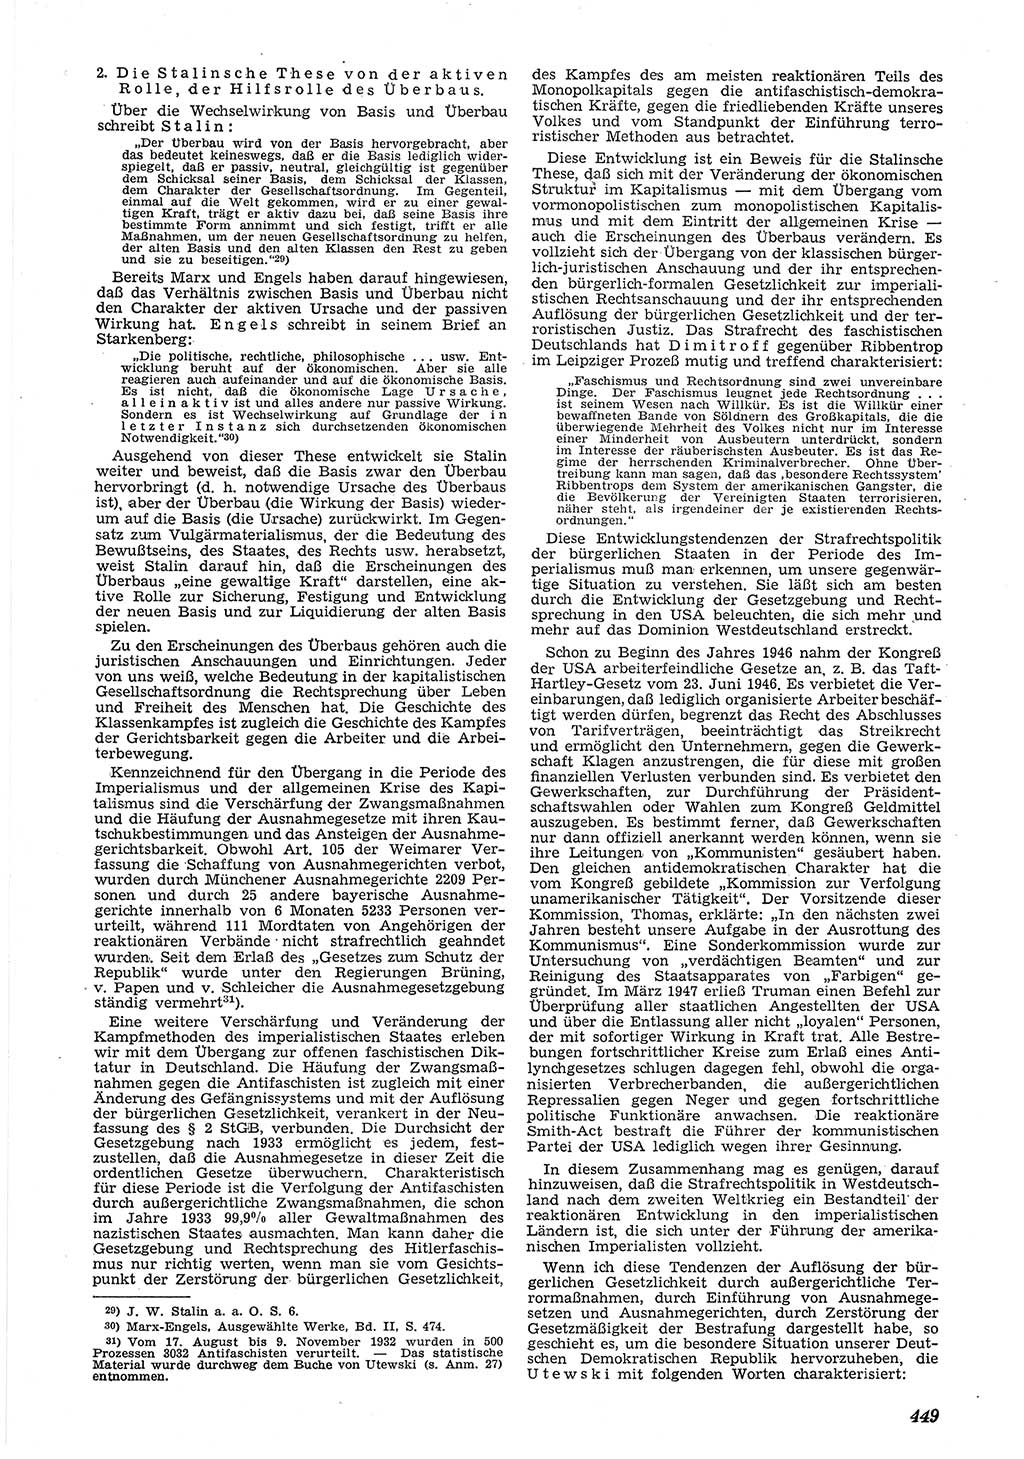 Neue Justiz (NJ), Zeitschrift für Recht und Rechtswissenschaft [Deutsche Demokratische Republik (DDR)], 5. Jahrgang 1951, Seite 449 (NJ DDR 1951, S. 449)